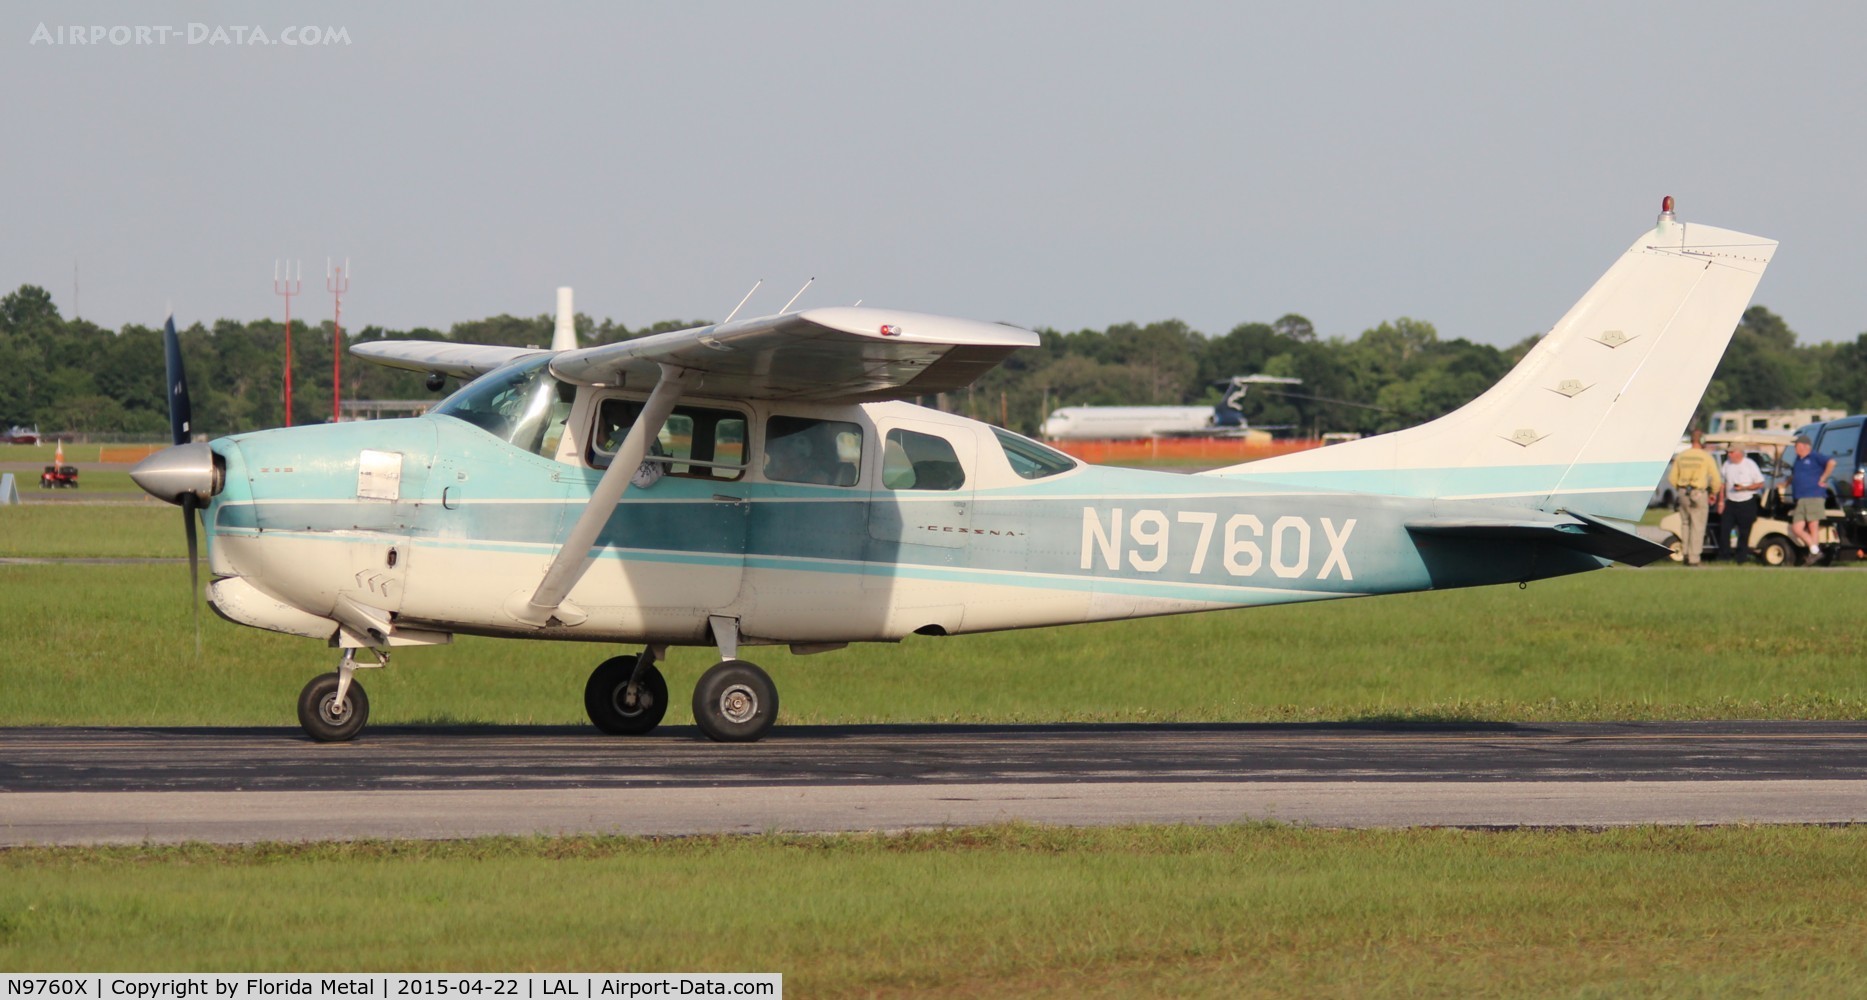 N9760X, 1962 Cessna 210B C/N 21058060, Cessna 210B